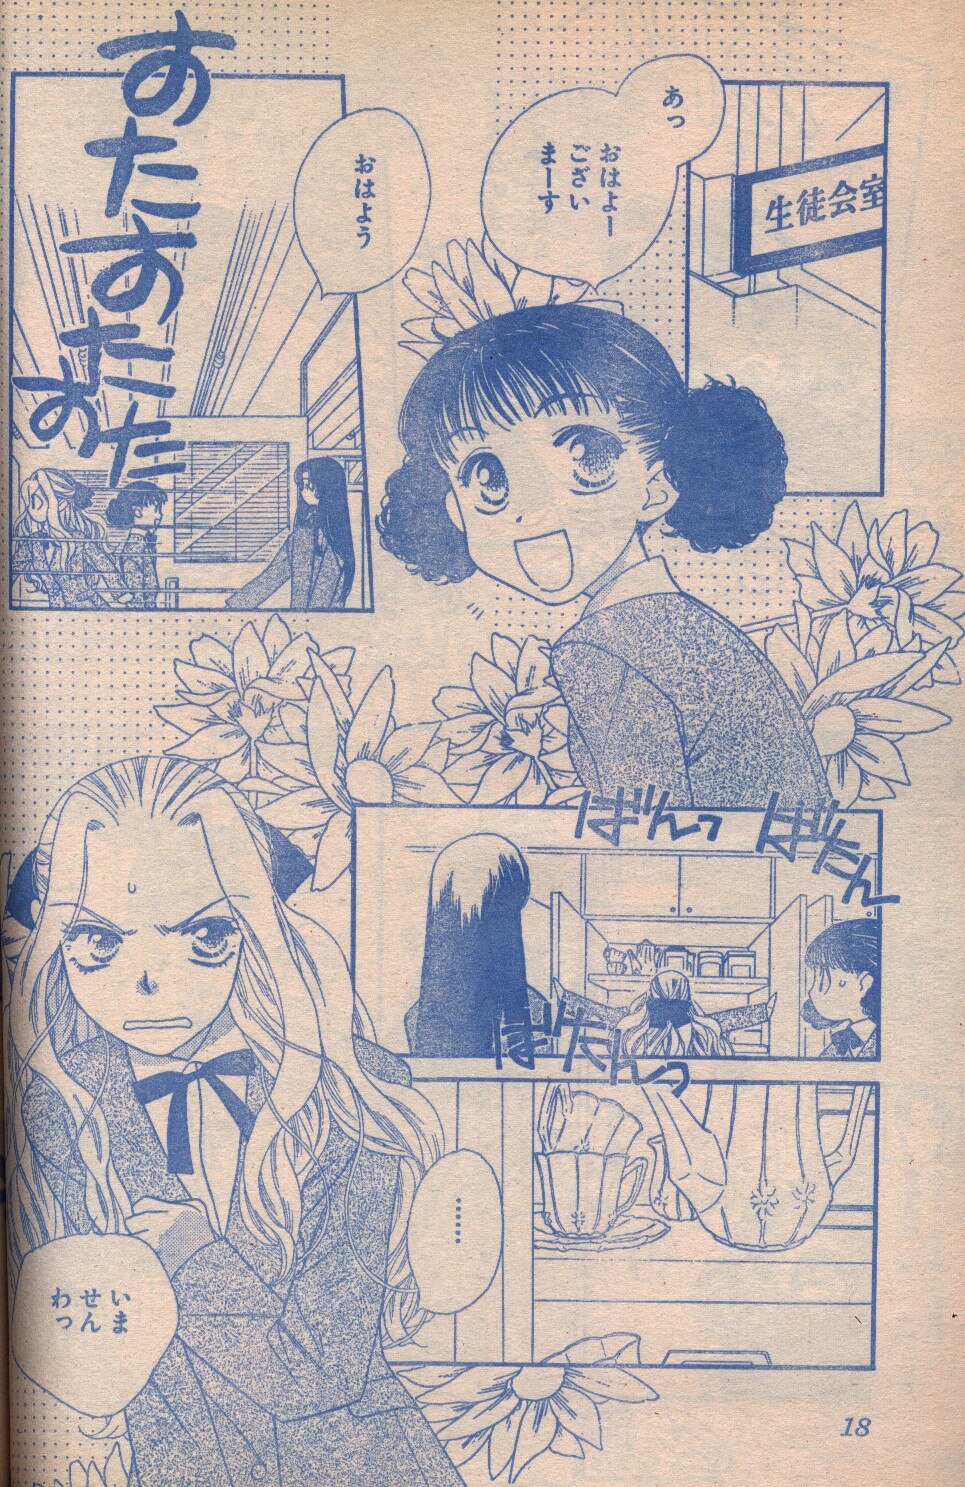 花とゆめ1999年(平成11年)14号 | まんだらけ Mandarake